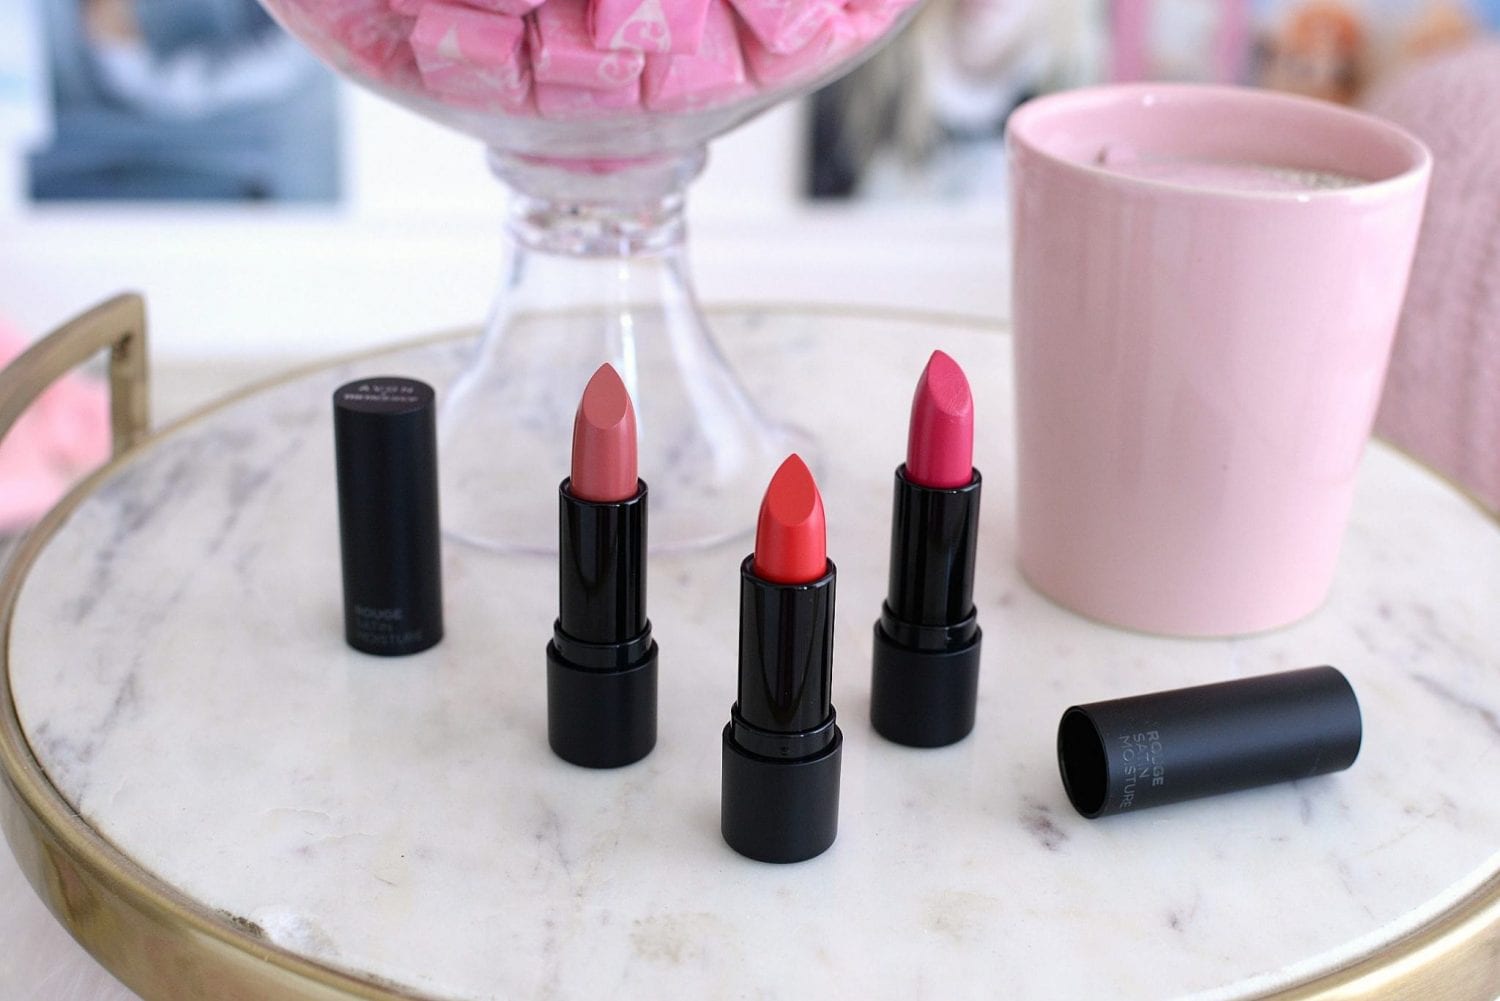 Avon’s Rouge Satin Moisture Lipstick